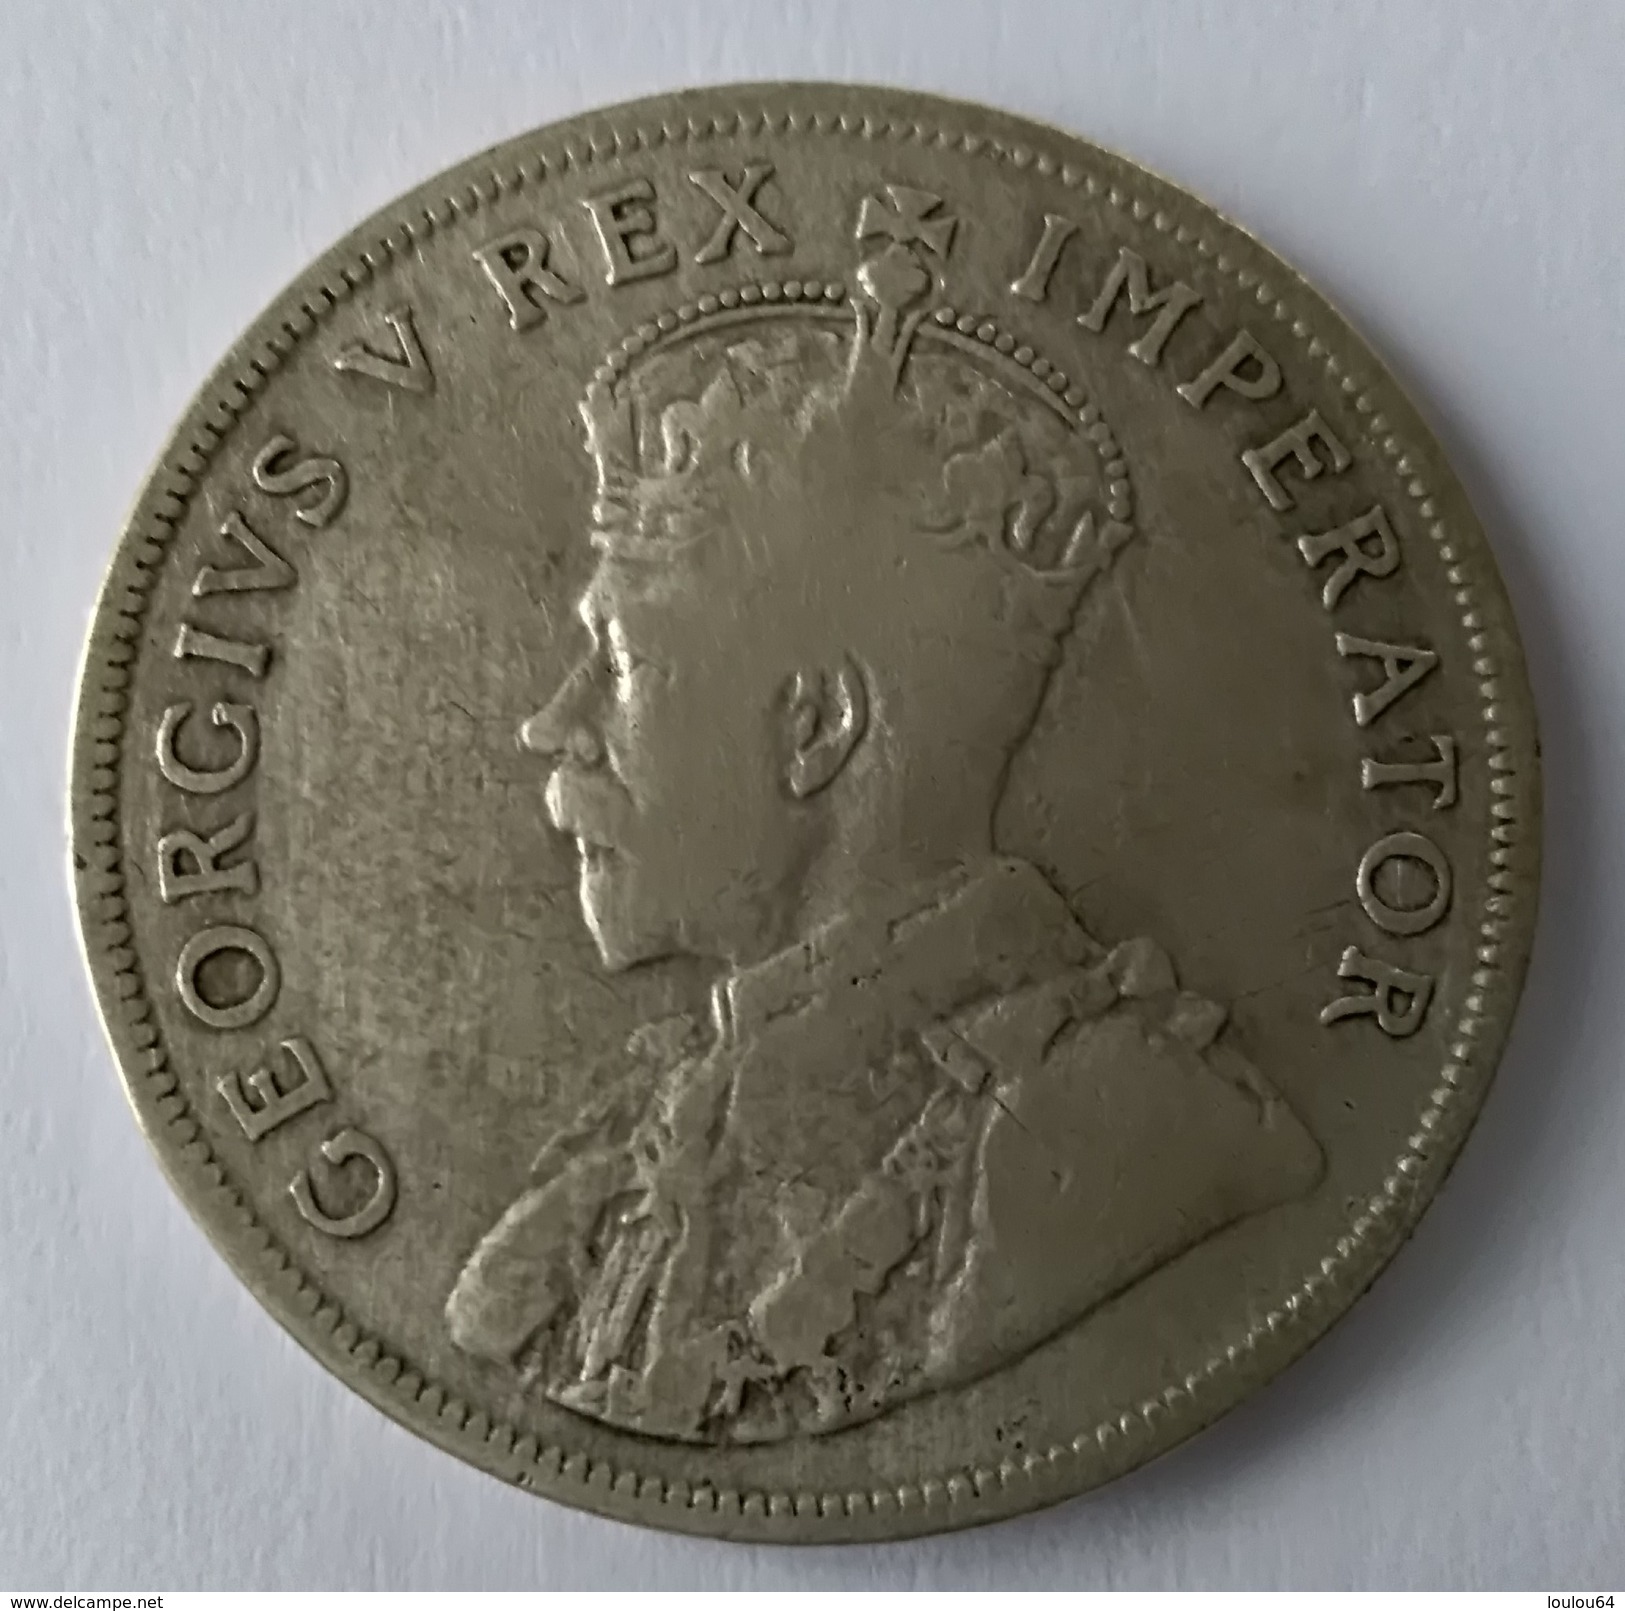 2 Shillings -1933 - South Africa - Suid Afrika - Georges V - Argent - - Afrique Du Sud